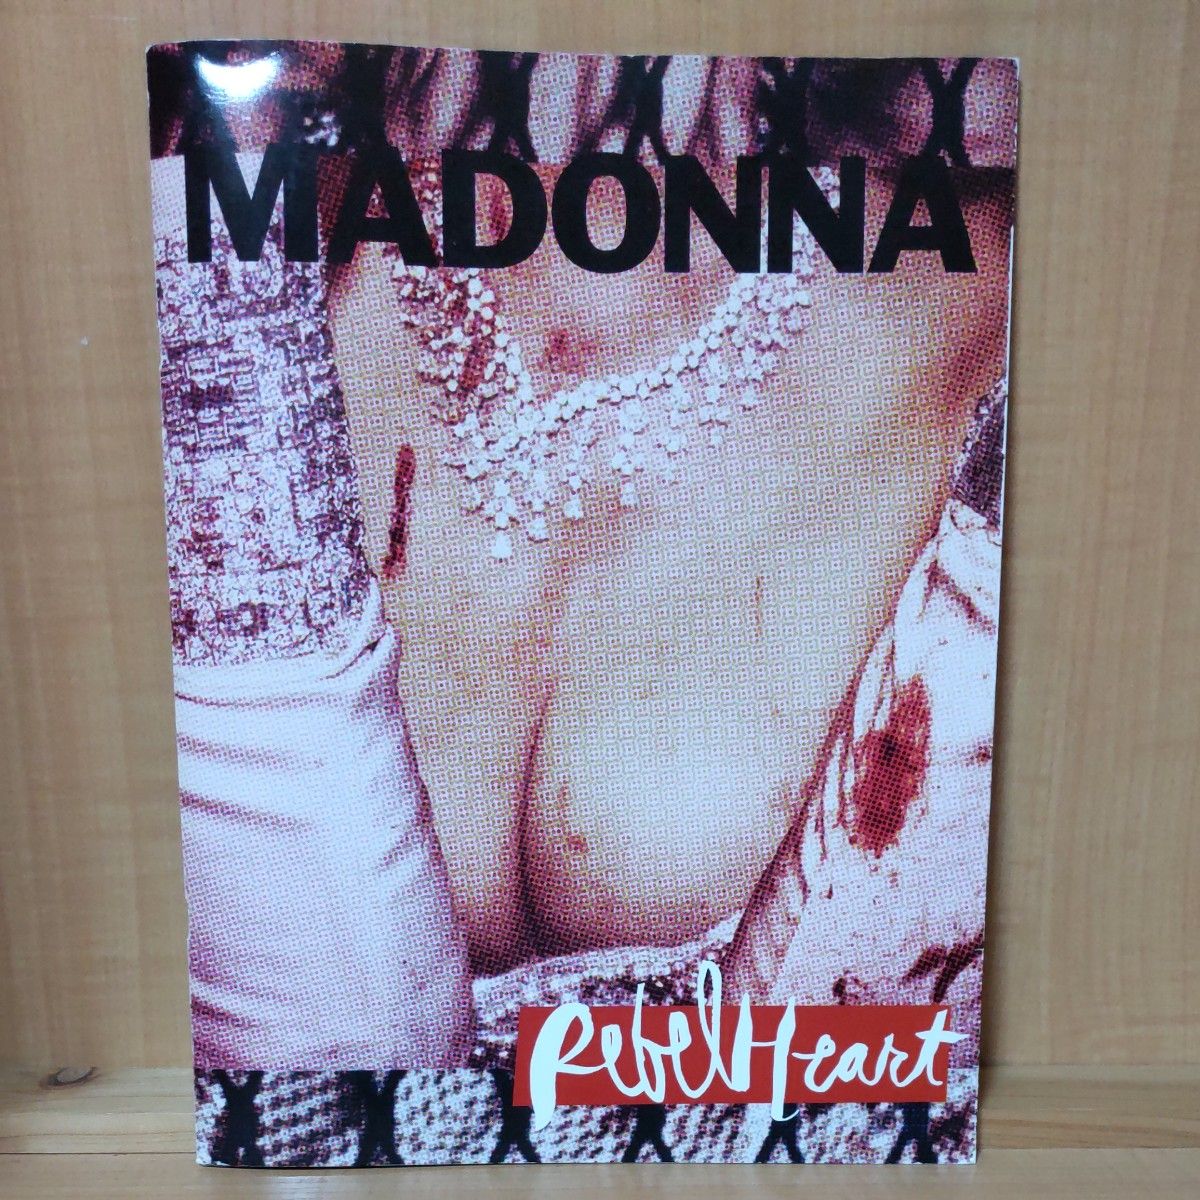 Madonna マドンナ アートブック